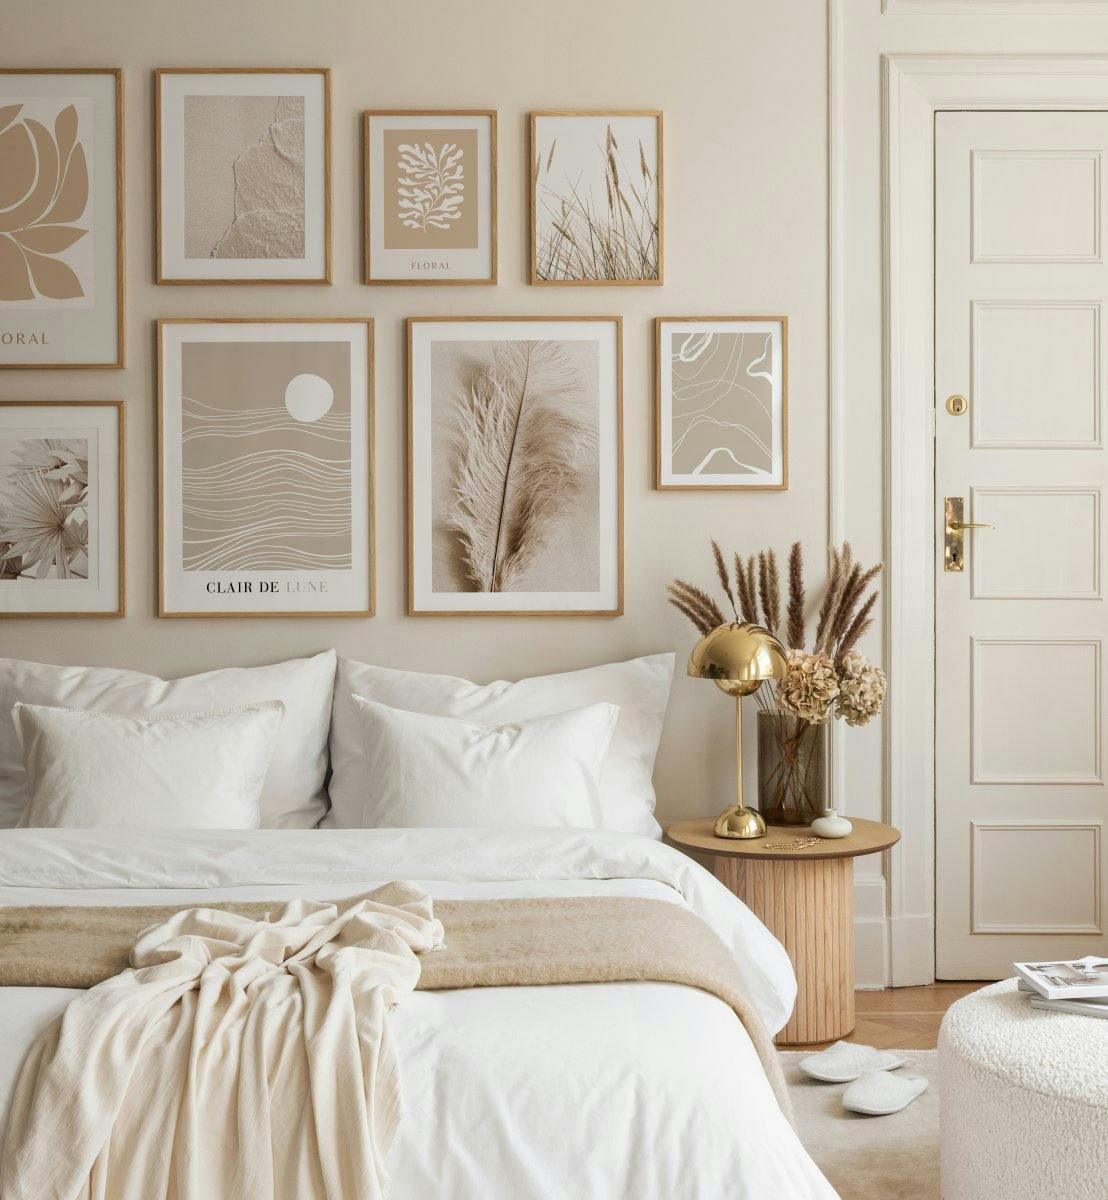 Affiches beiges apaisantes et harmonieuses pour la chambre